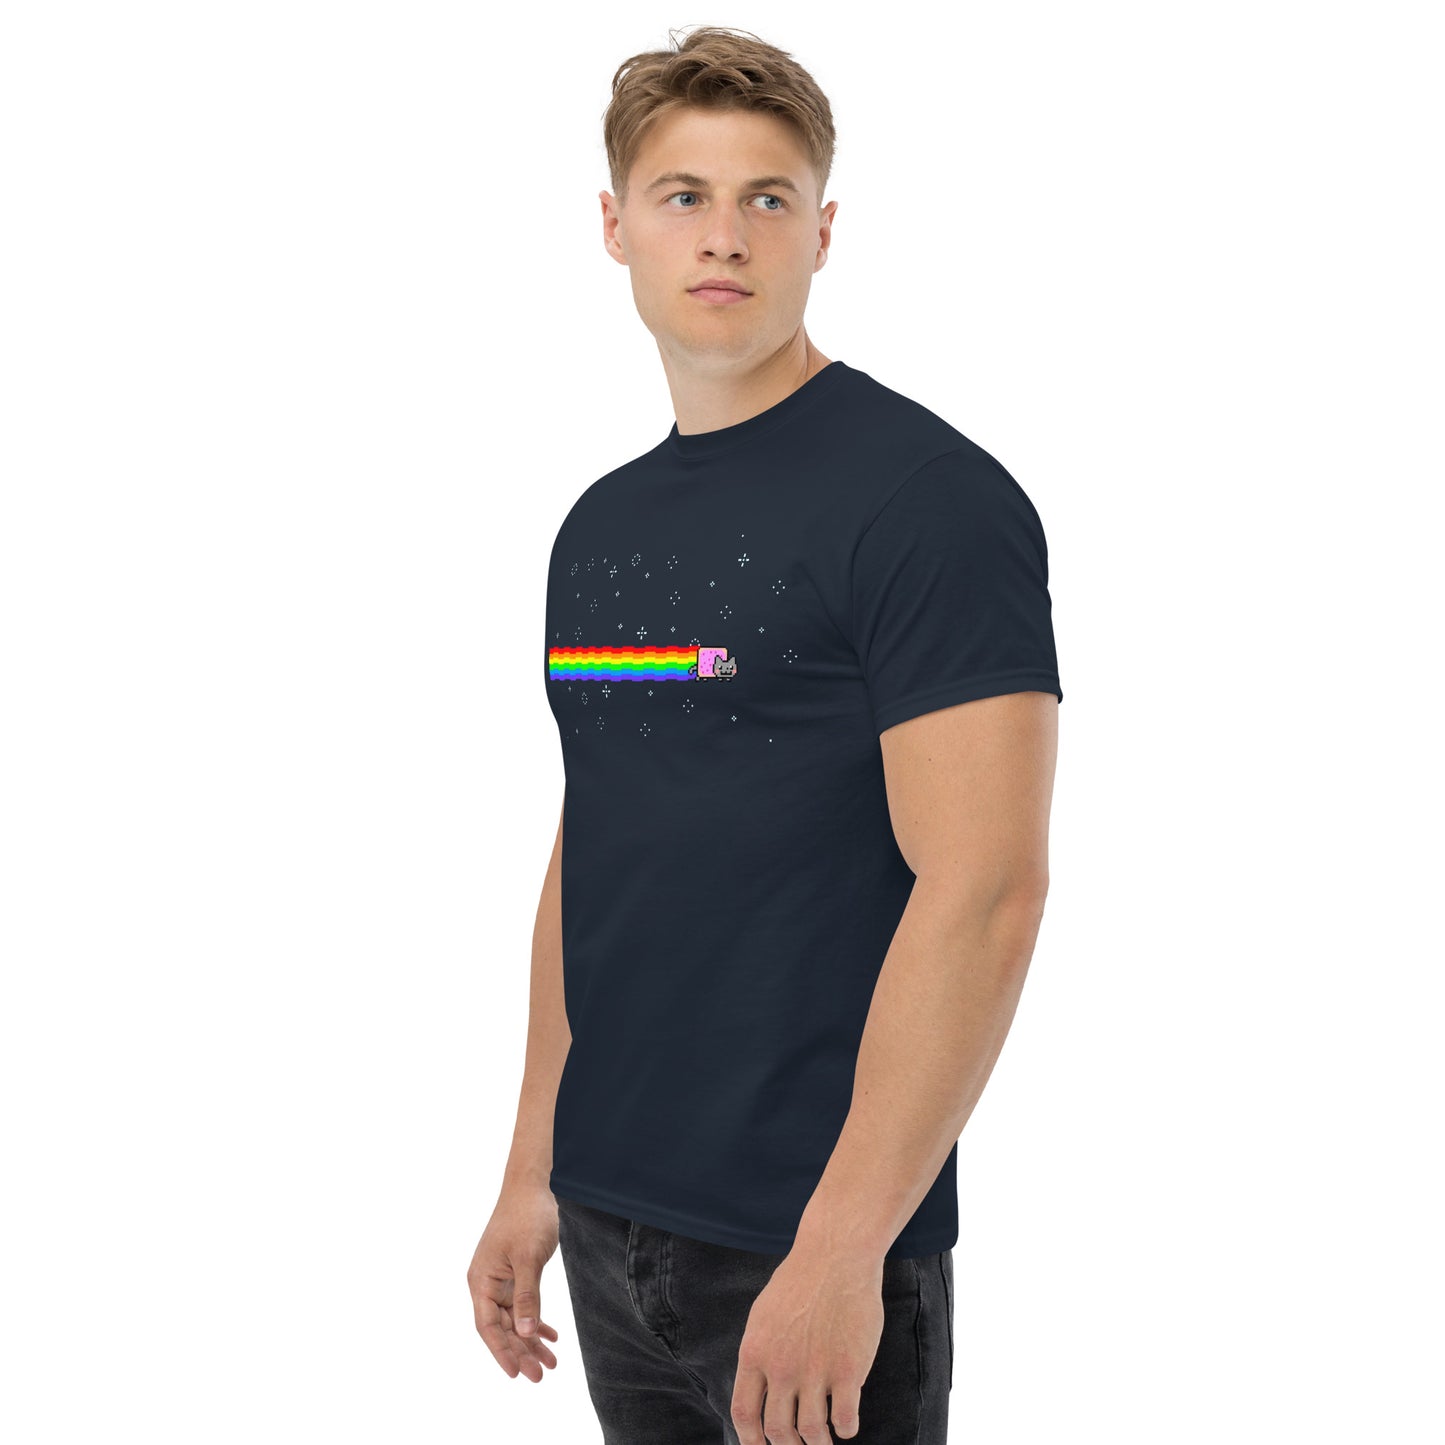 Nyan Cat Meme Navy T-Shirt